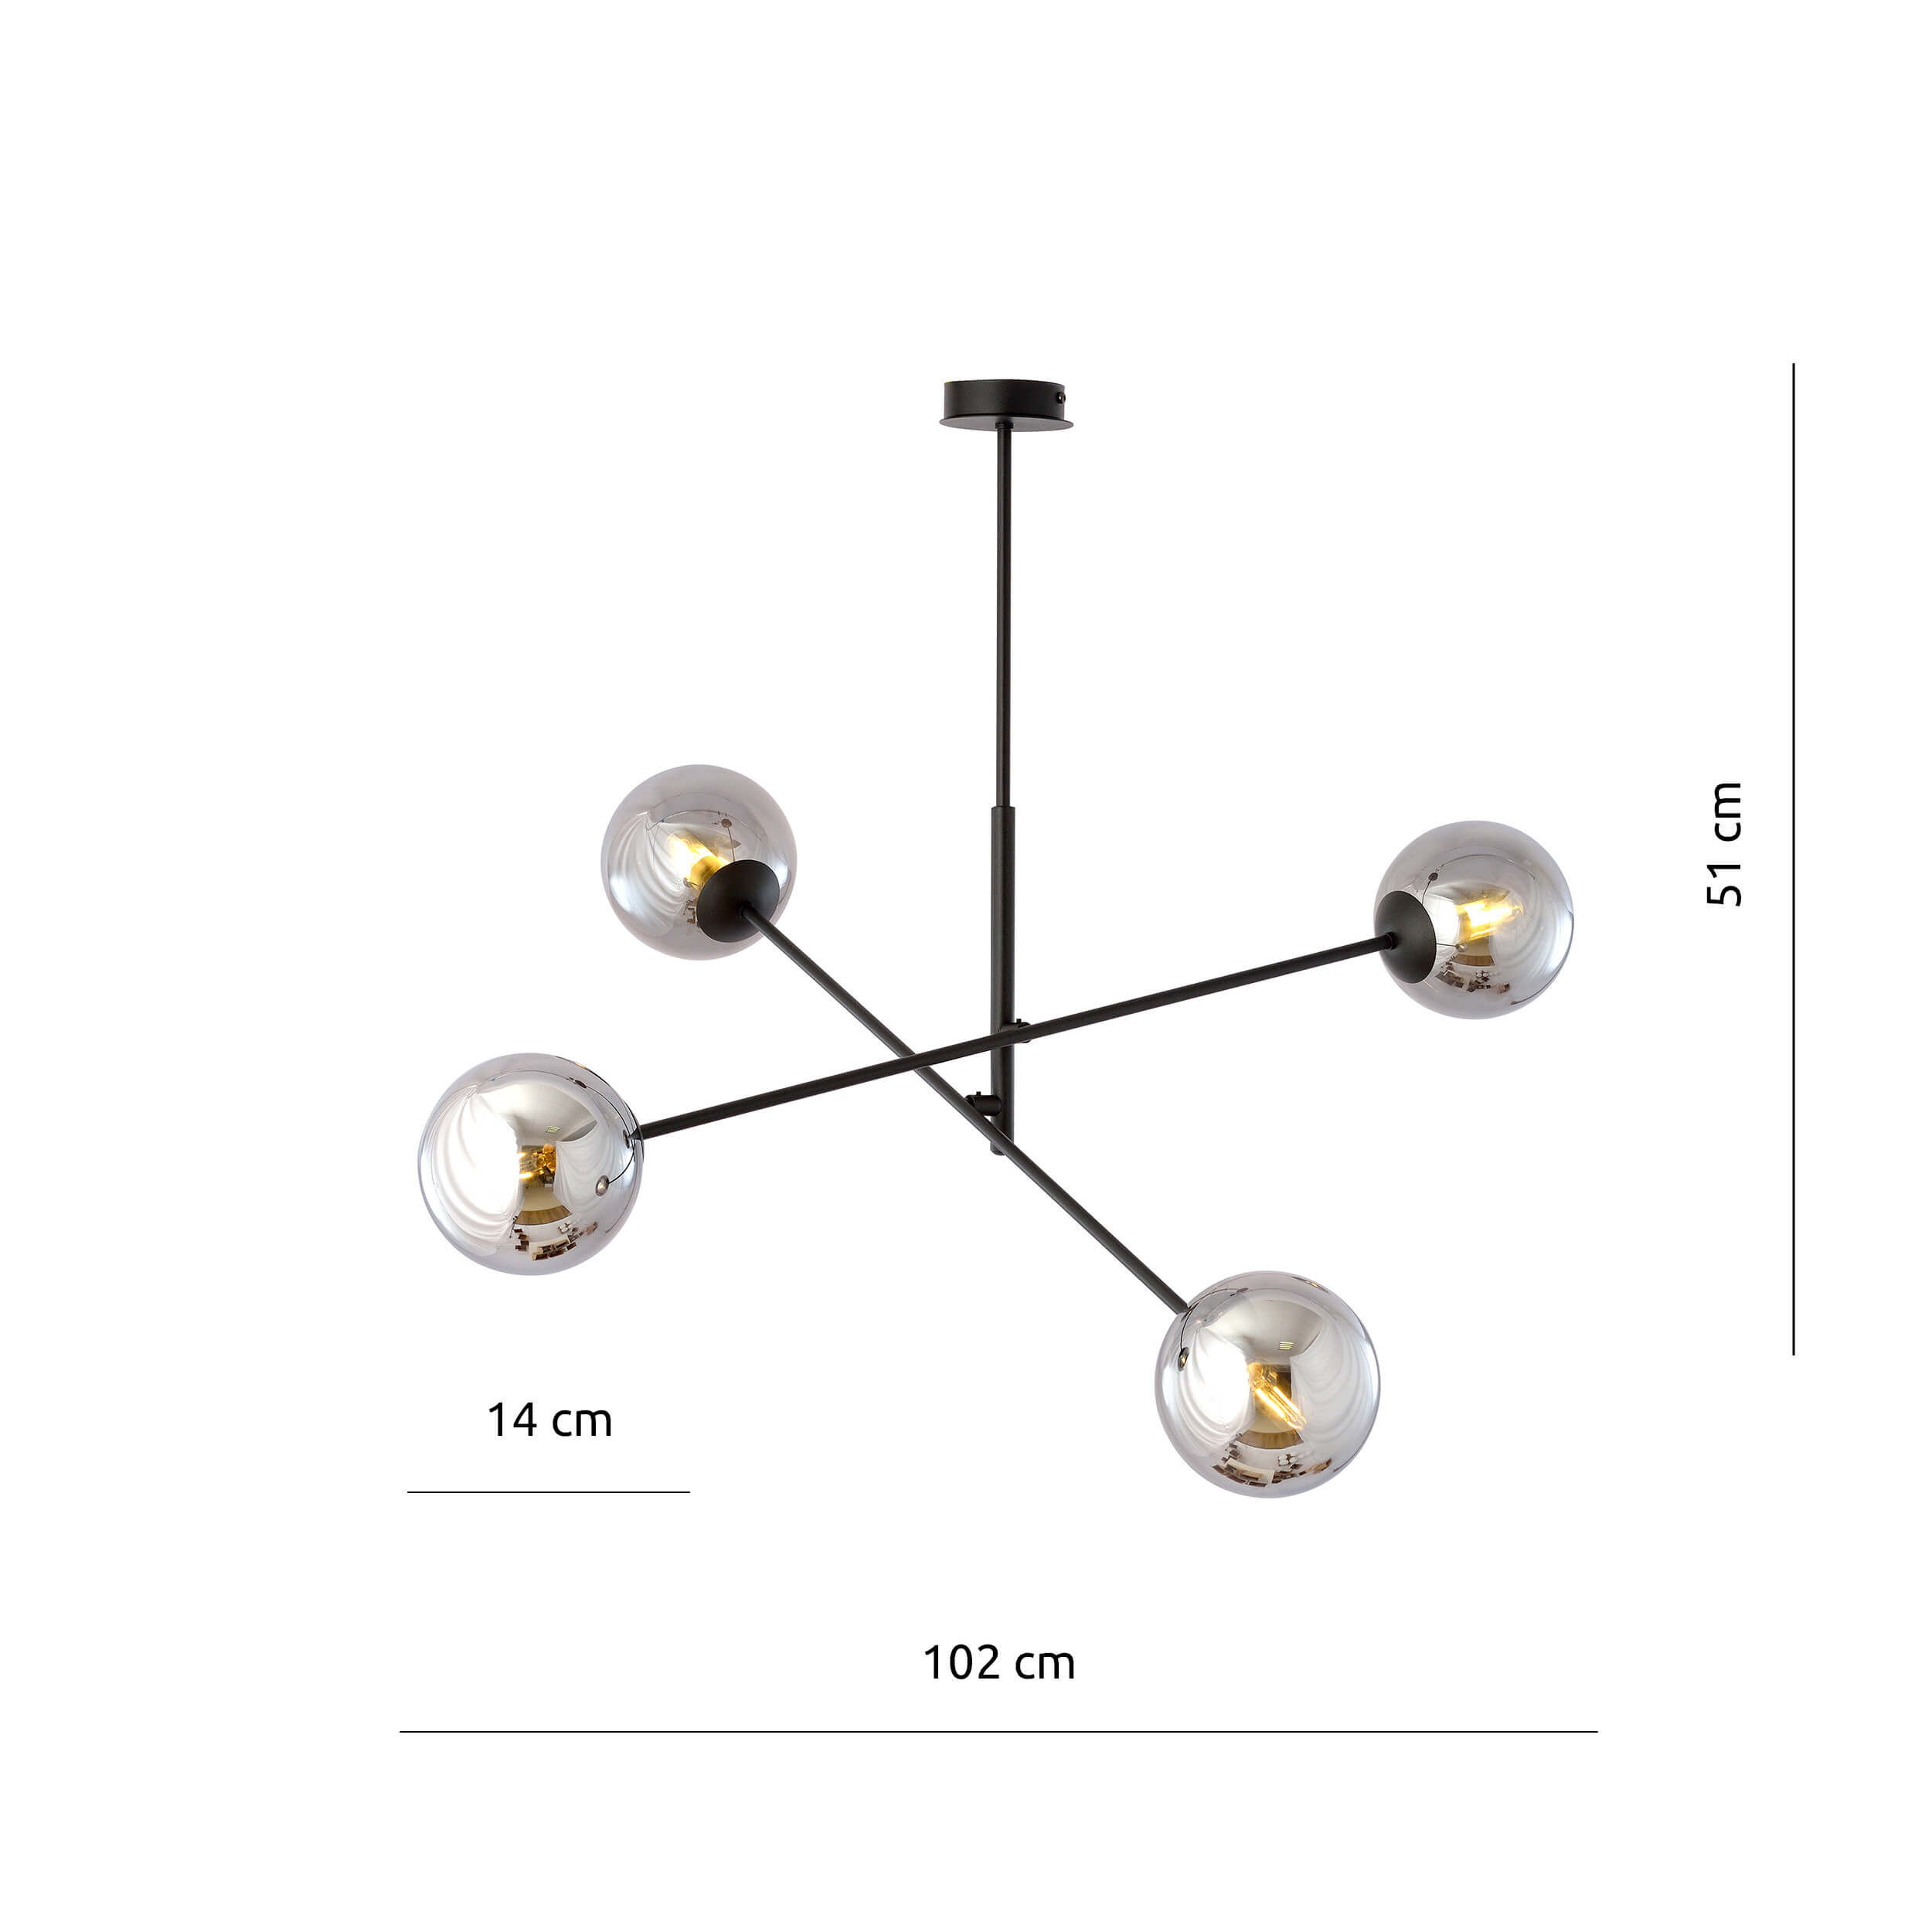 Regulowana lampa sufitowa Frix 4 w designerskim stylu